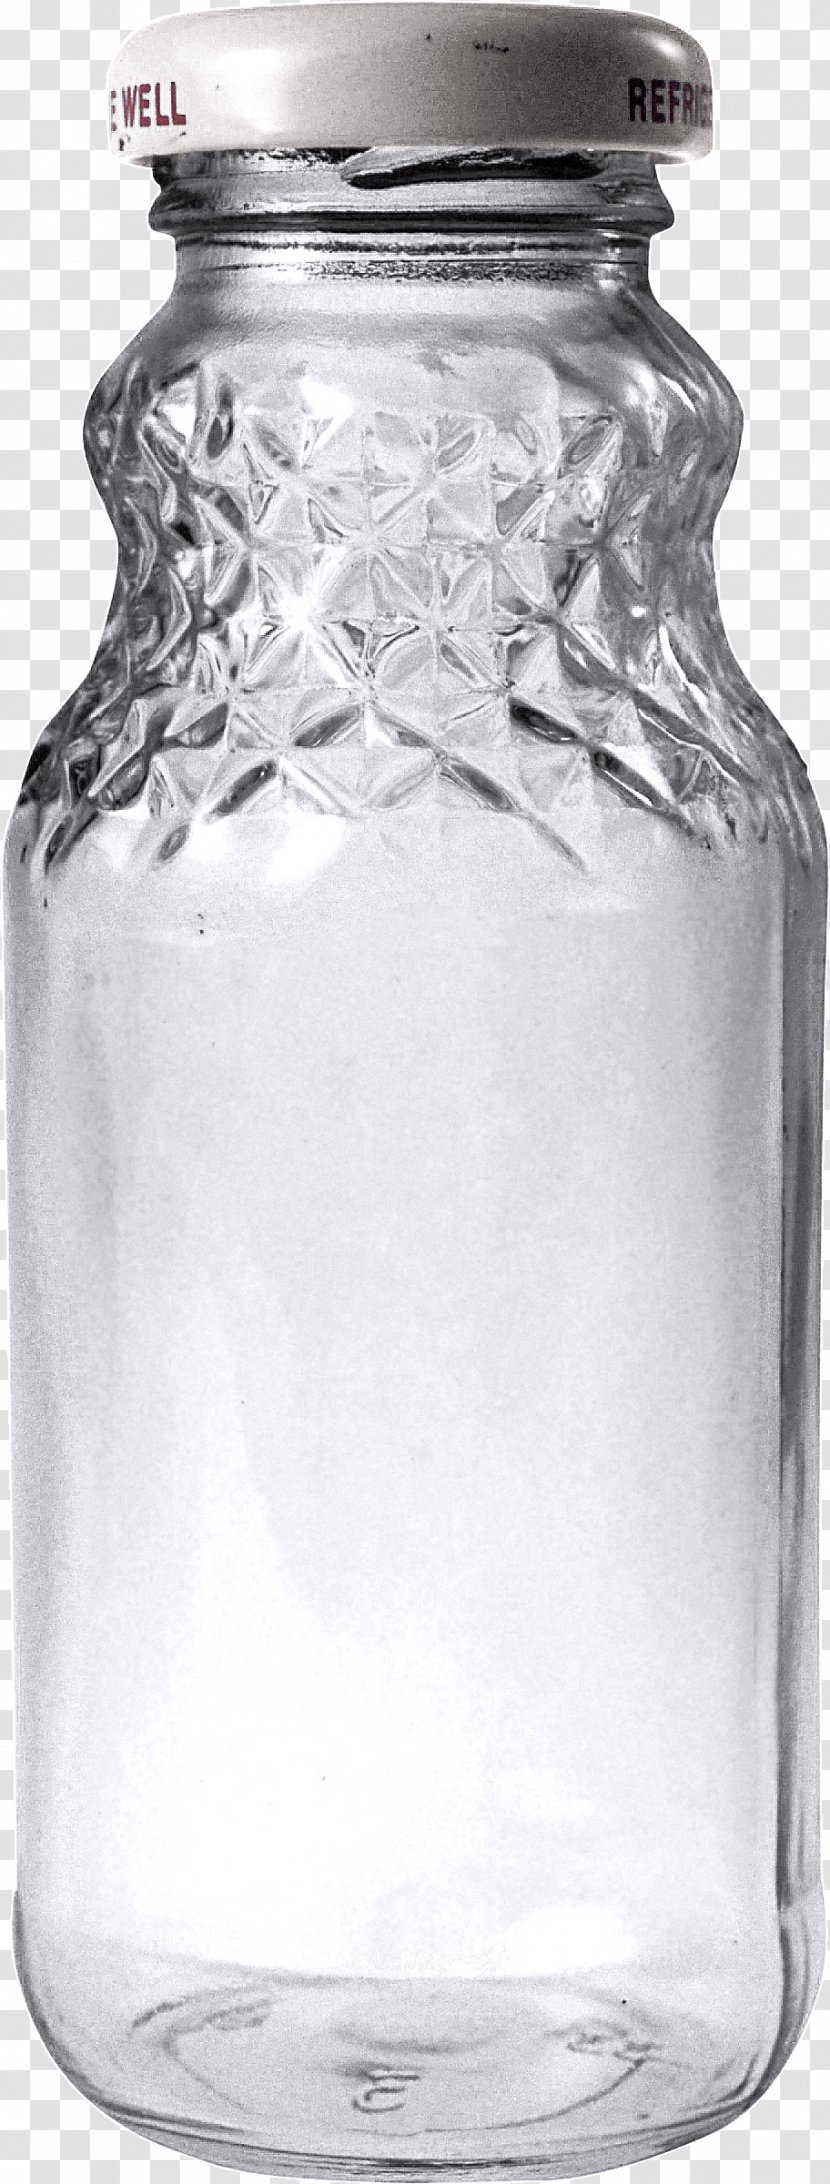 Glass Bottle Clip Art - Cow S Milk - Empty Image Transparent PNG